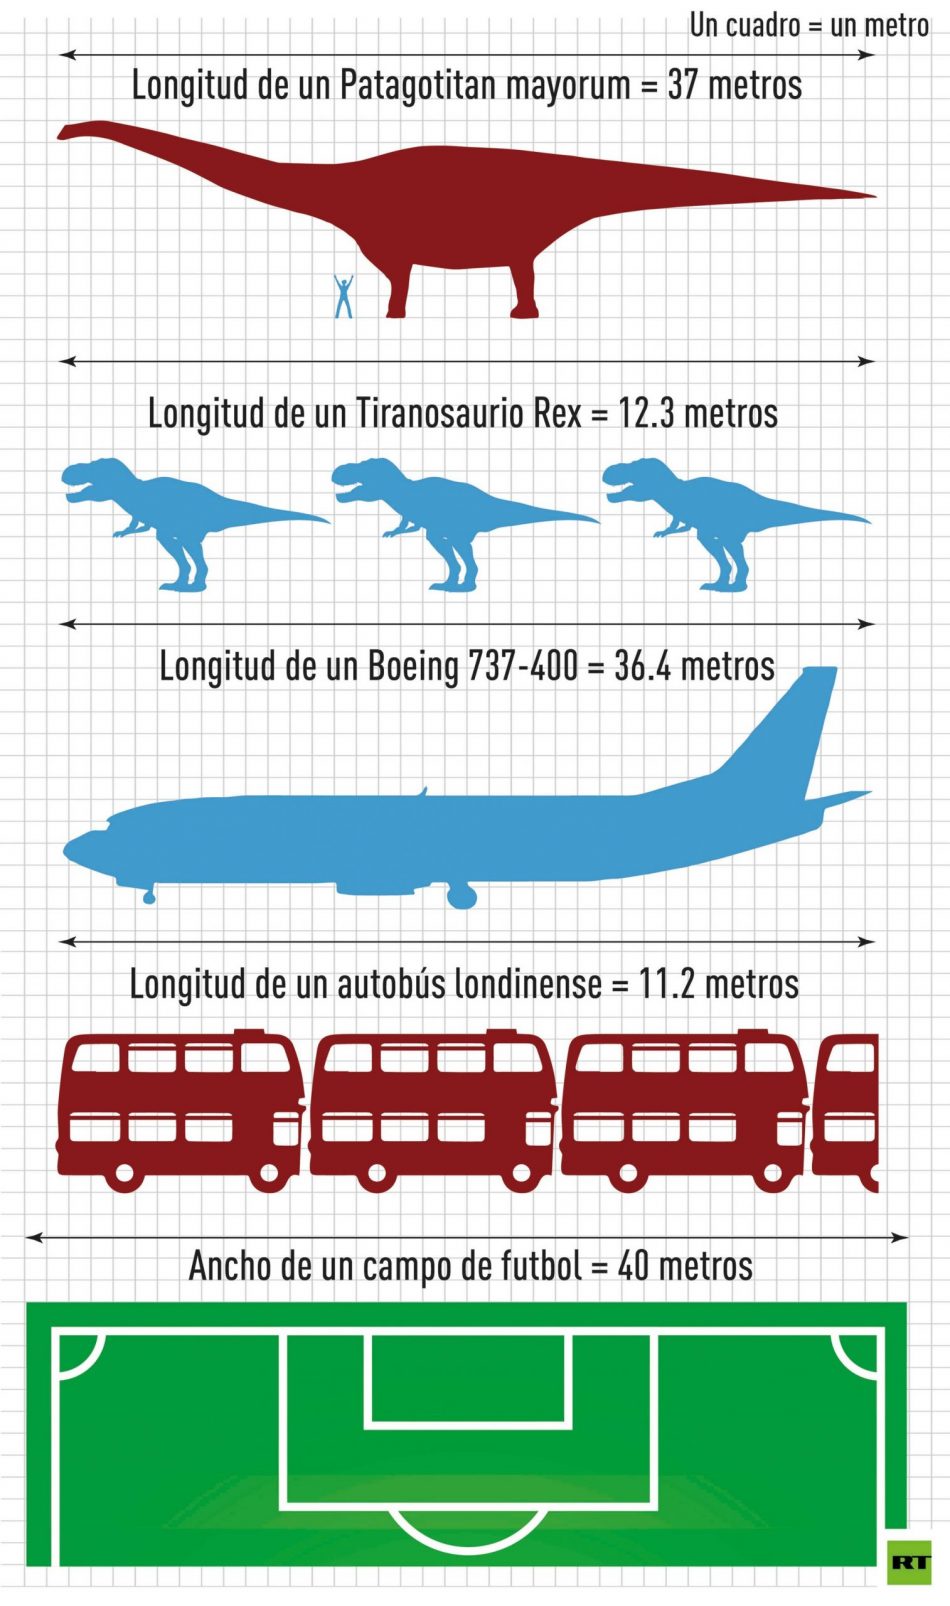 El dinosaurio hallado en Argentina es el mayor del que se tiene constancia